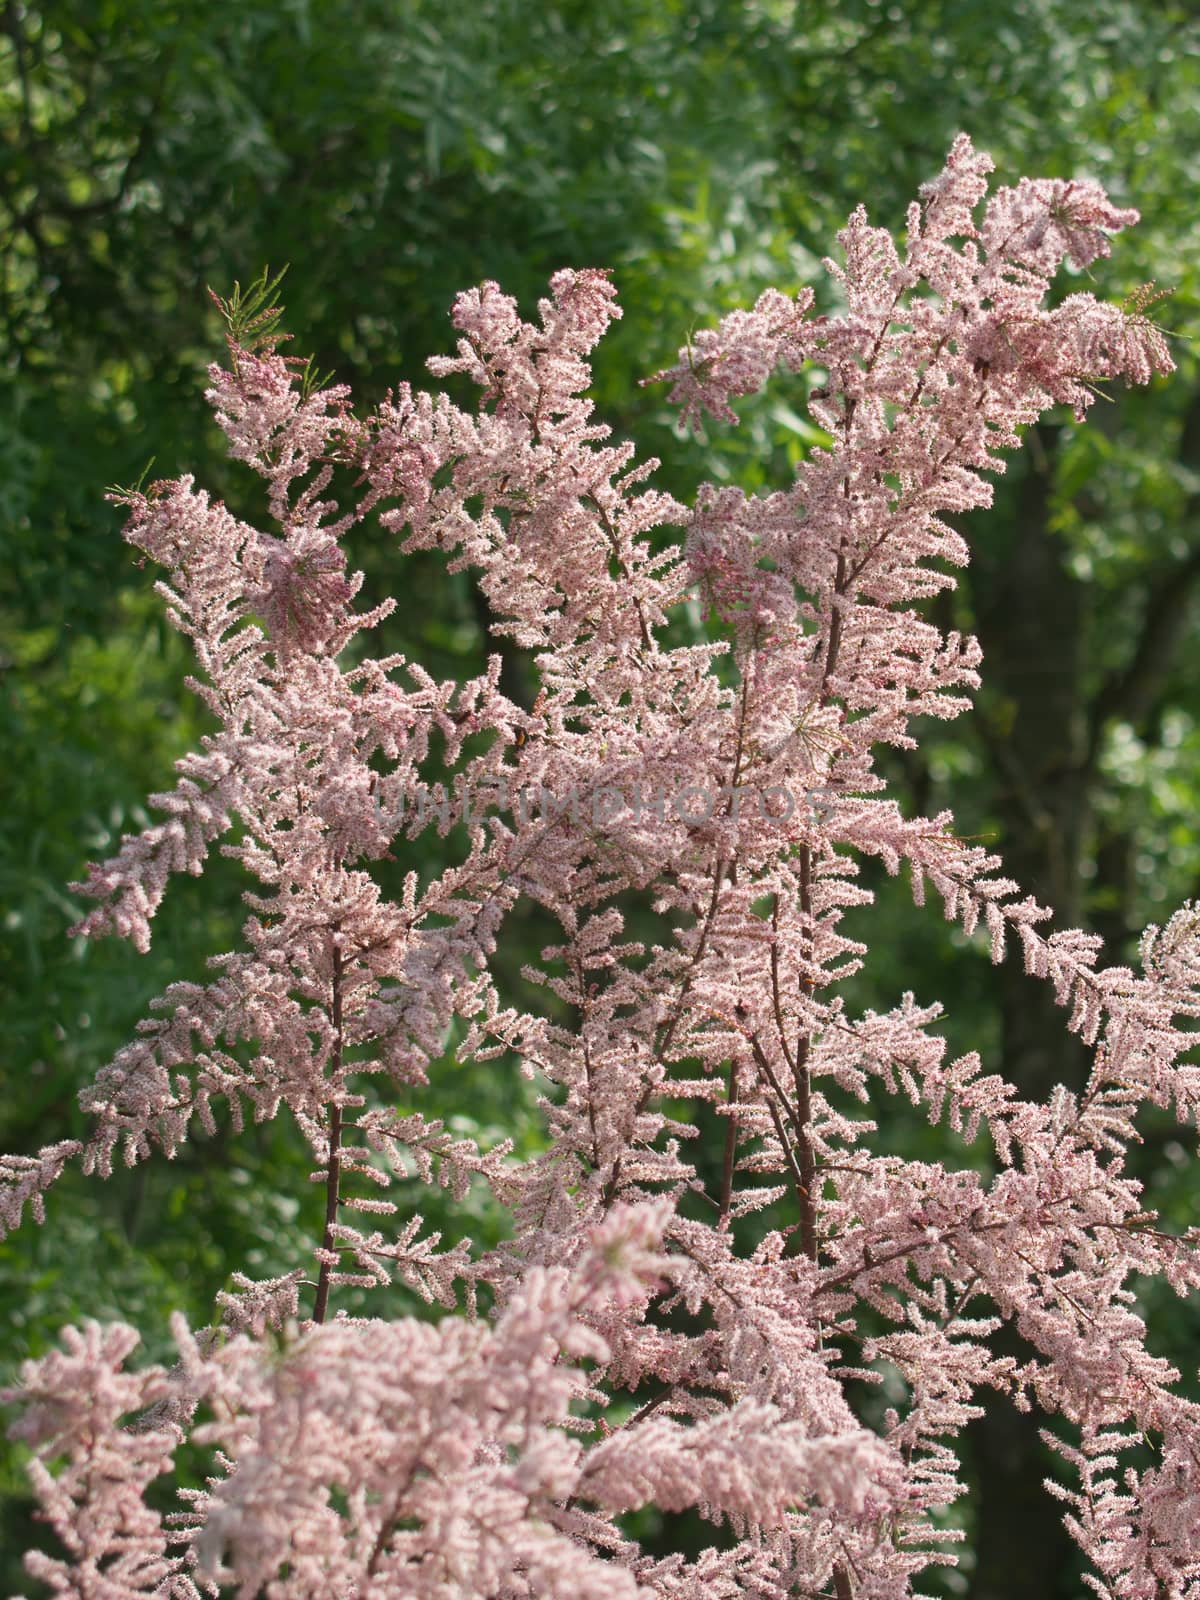 Flowering tamarisk (Tamarix tetrandra) shrub in the park.